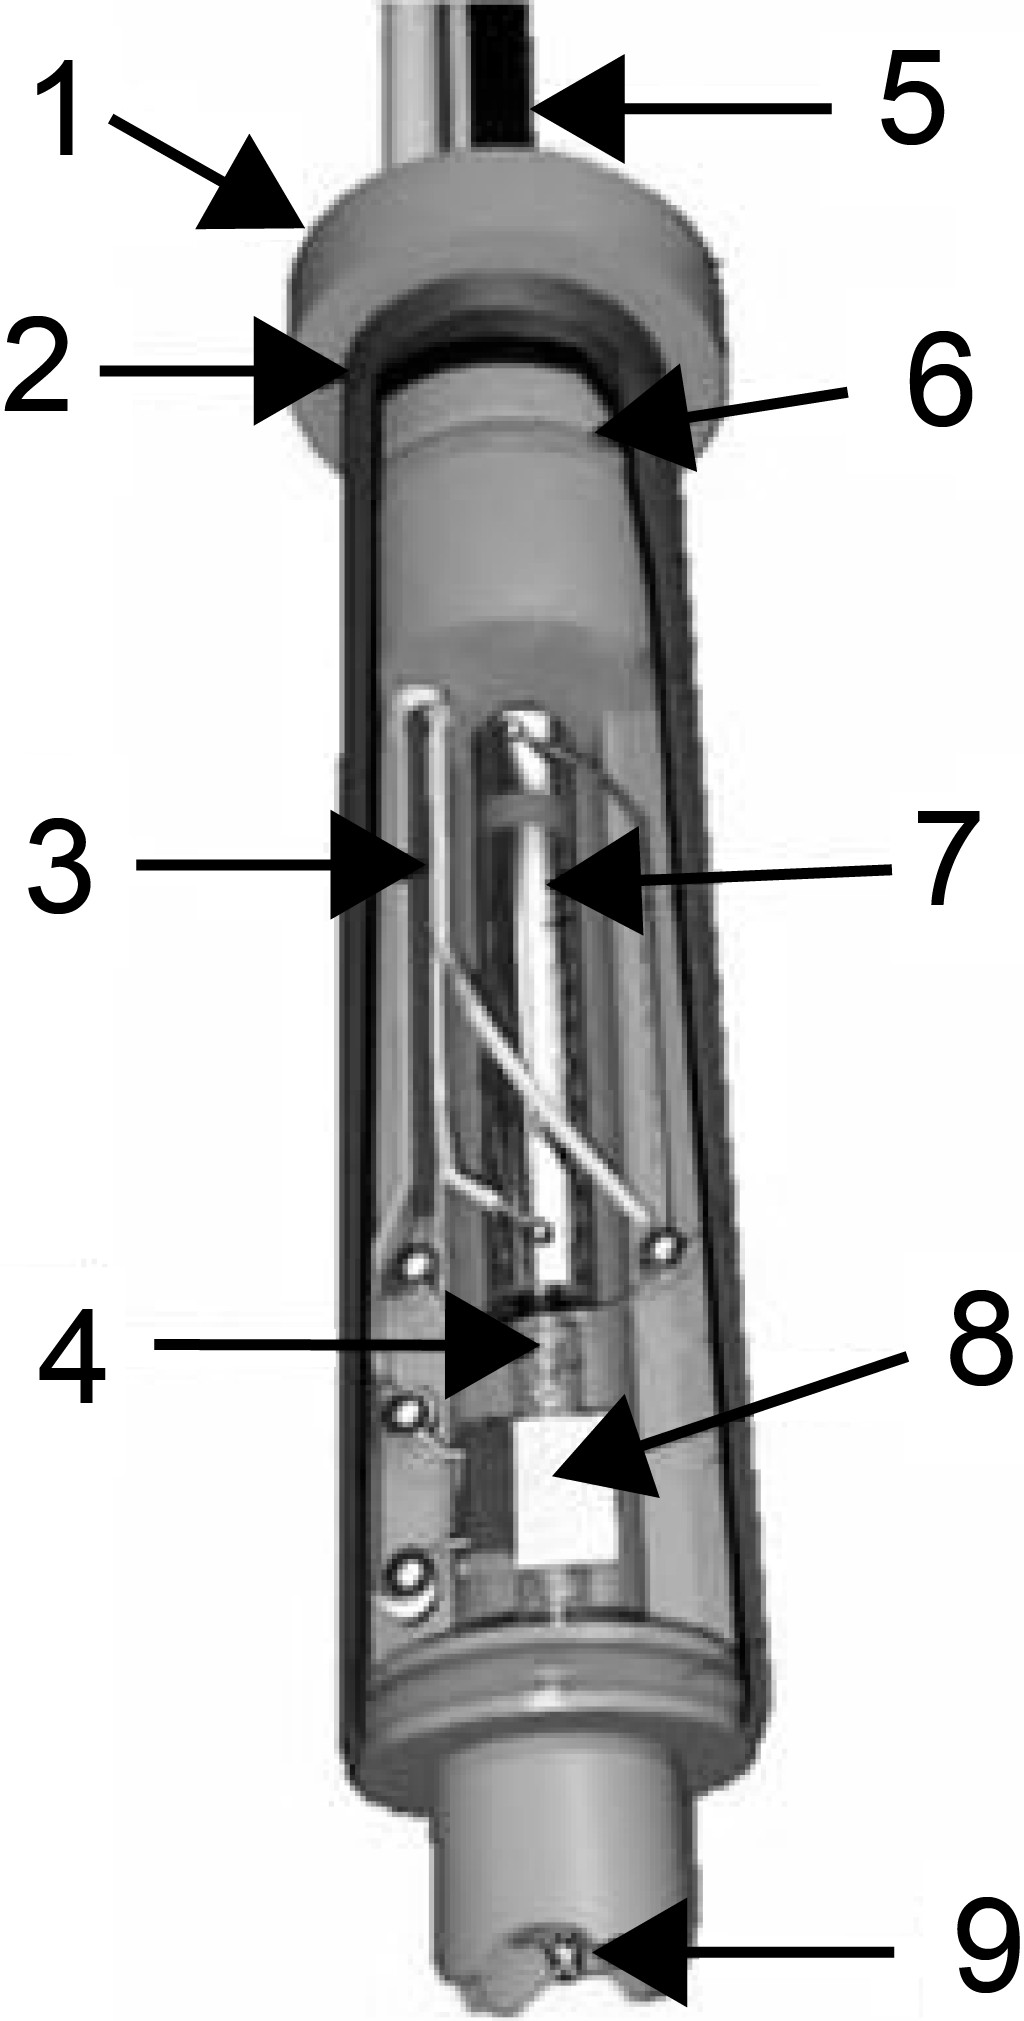 Bild 1. Schematischer Aufbau eines Dosierkopfes der MD-K-Serie der Fa. microdrop [7]. 1: Gehäuse, 2: Abdeckung, 3: Spannungsversorgung, 4: Heizung, 5: Flüssigkeitszufuhr, 6: Dichtung, 7: Piezoaktor, 8: Temperaturfühler, 9: Düse